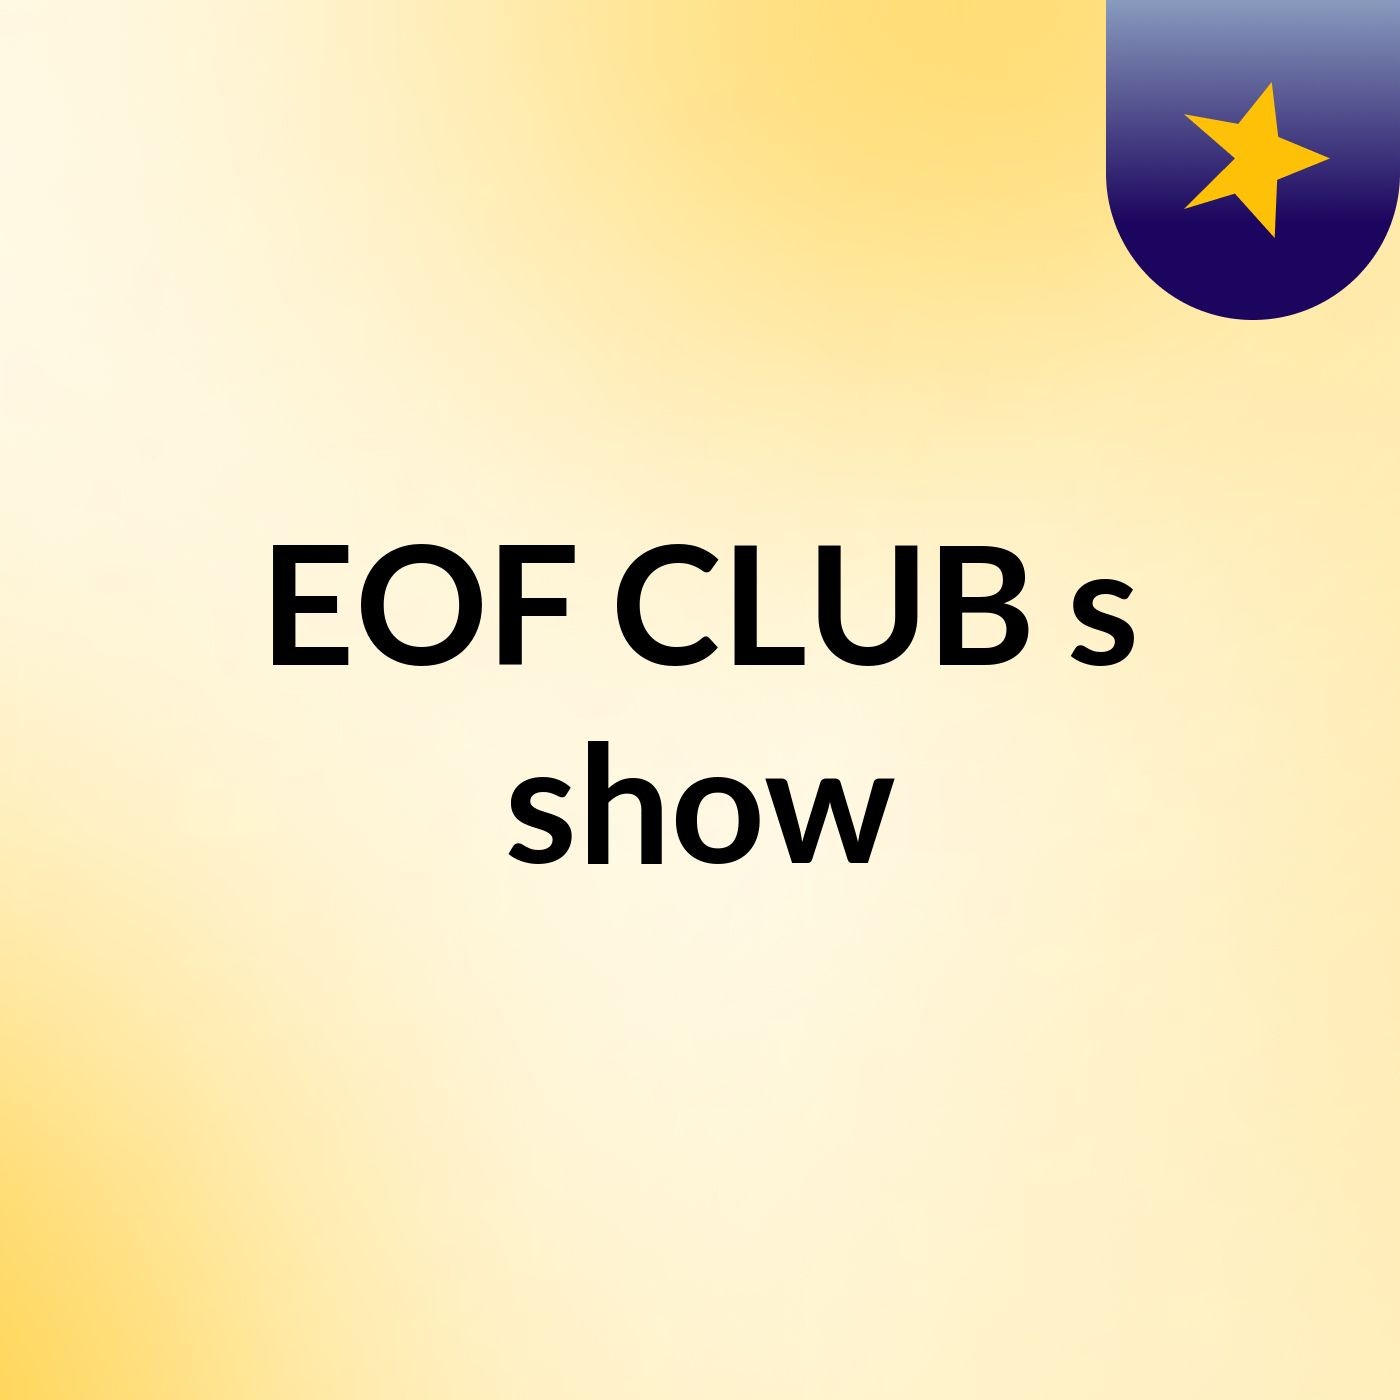 EOF CLUB's show